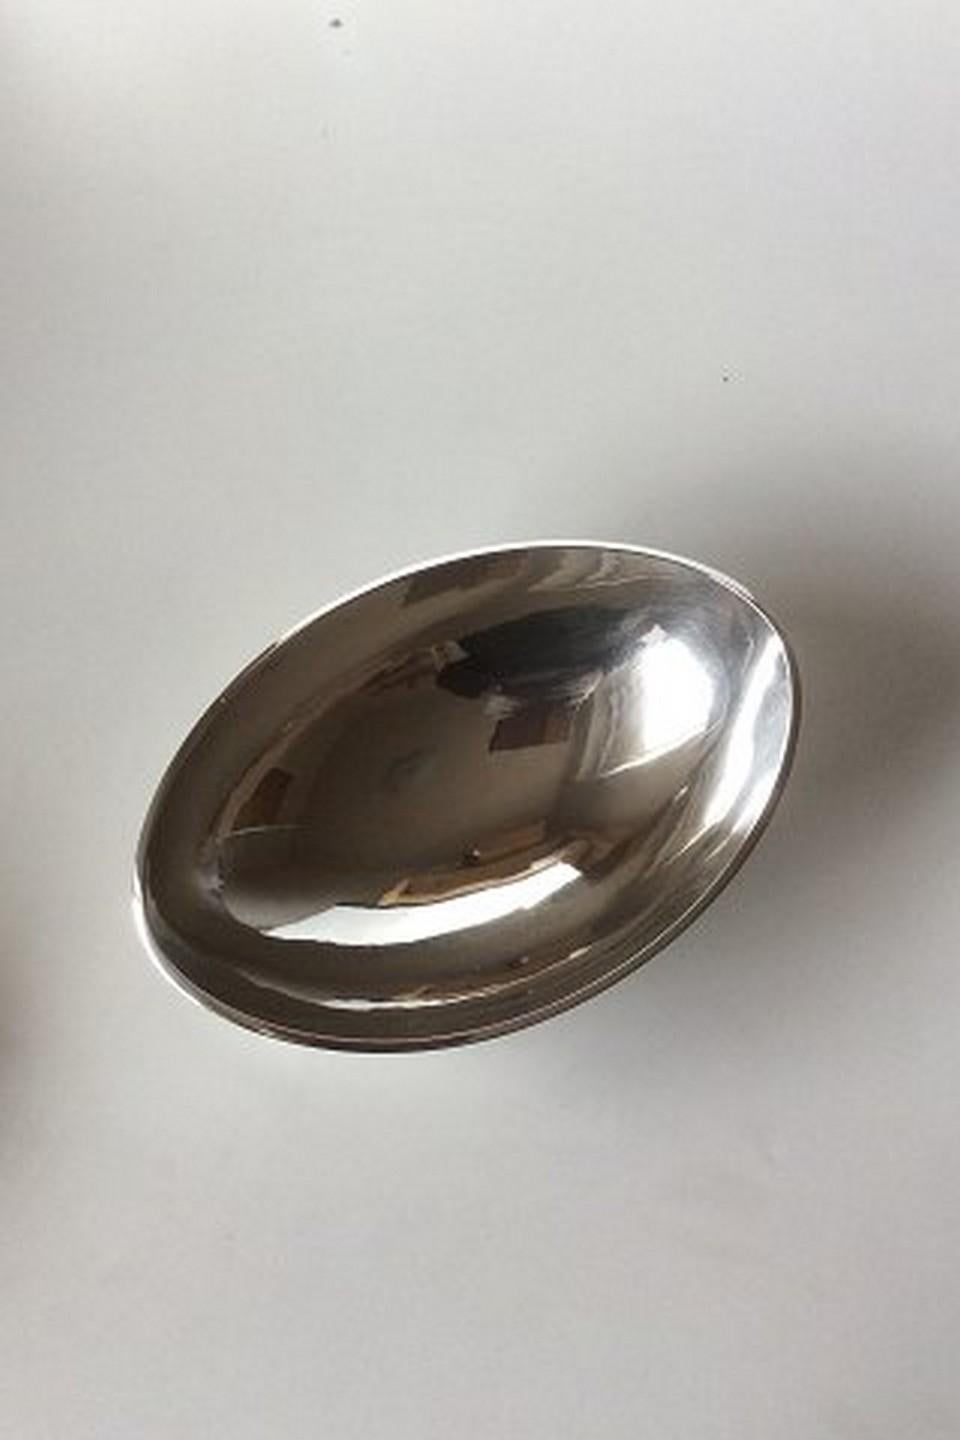 Hans Hansen sterling silver oval bowl no 396. Measures: 22.5 cm x 15.7 cm x 6 cm / 8 55/64